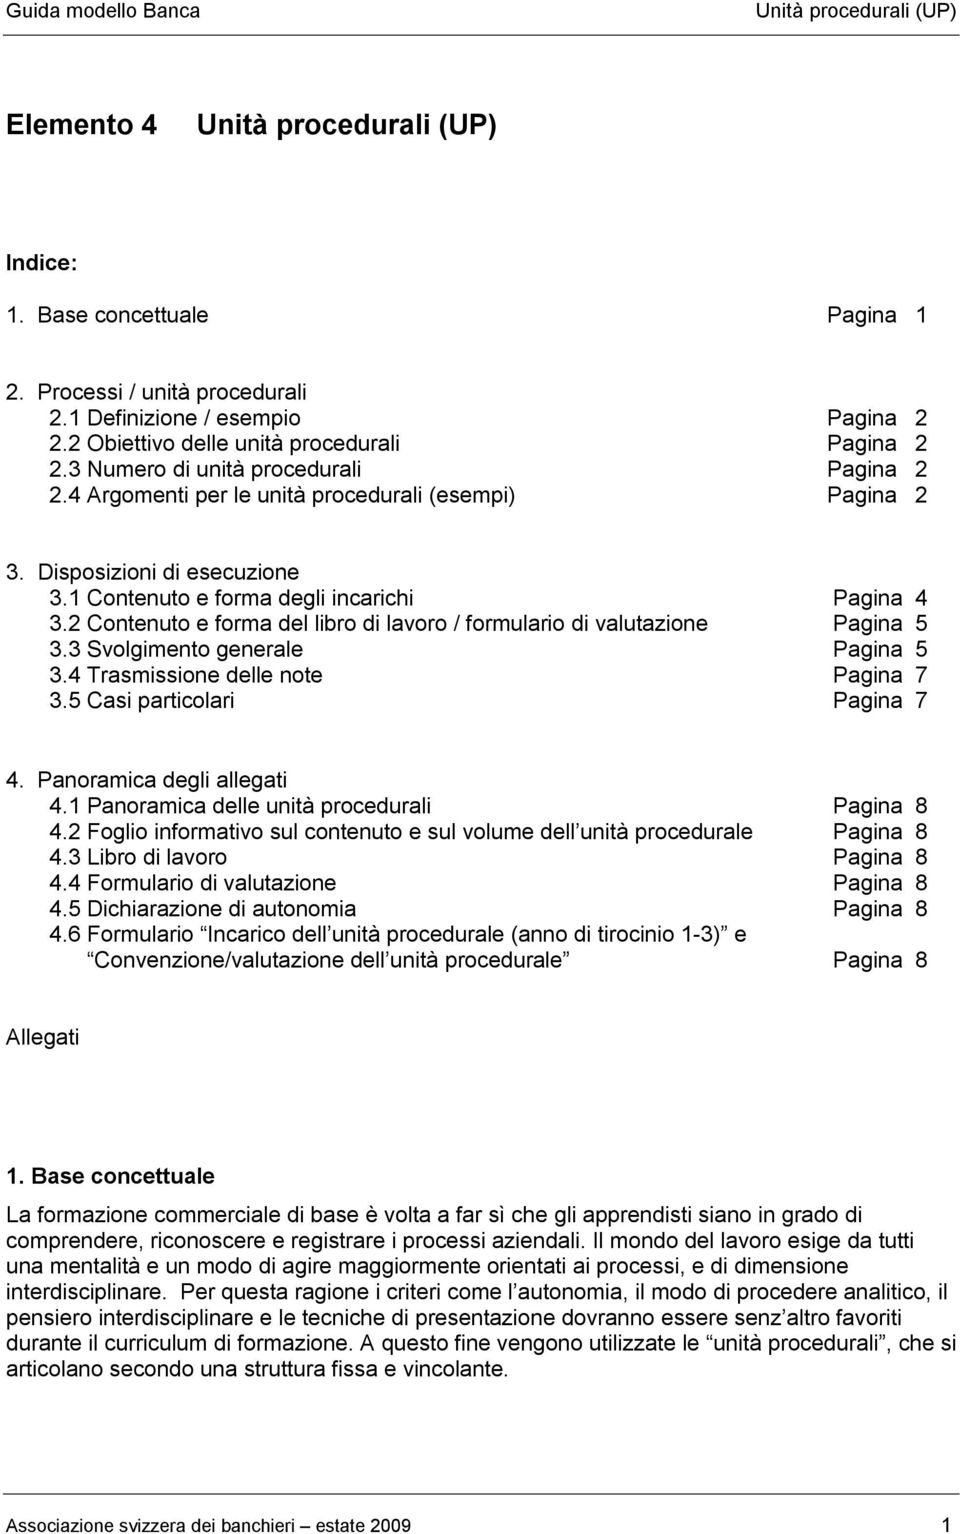 2 Contenuto e forma del libro di lavoro / formulario di valutazione Pagina 5 3.3 Svolgimento generale Pagina 5 3.4 Trasmissione delle note Pagina 7 3.5 Casi particolari Pagina 7 4.